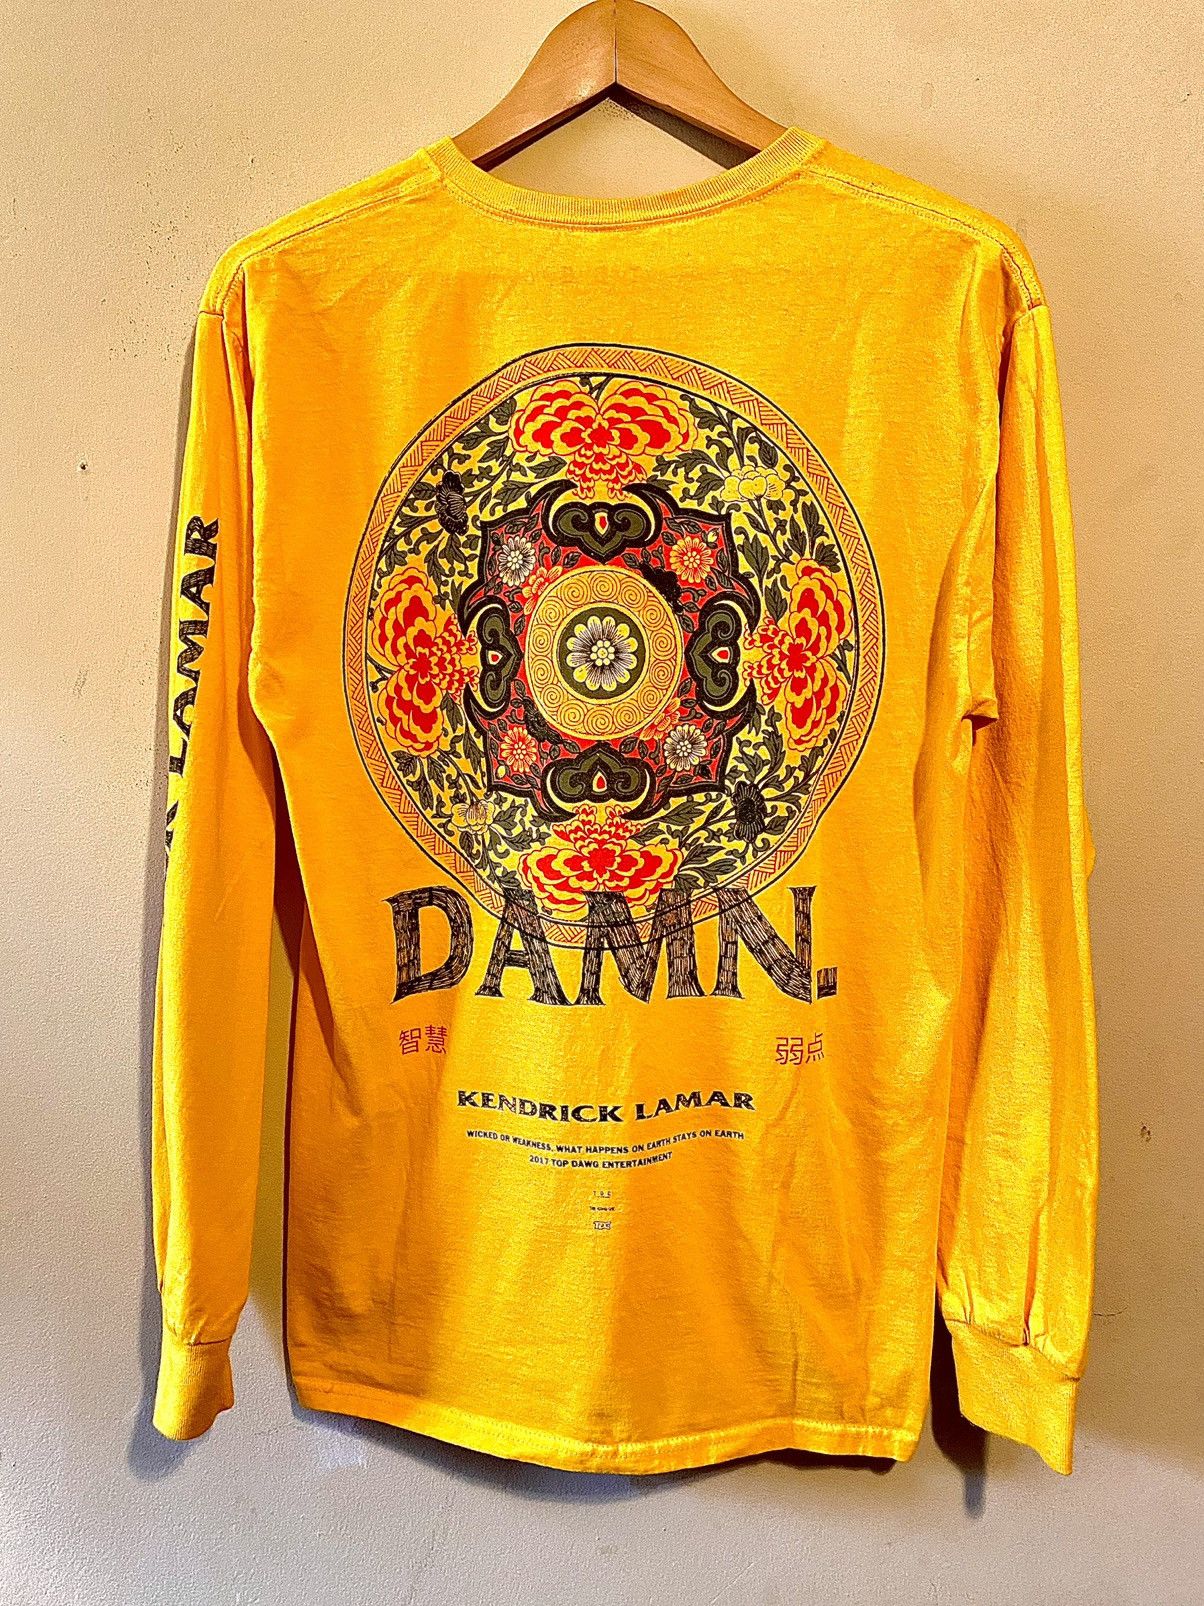 Kendrick Lamar Kendrick Lamar Damn Tour Shirt Size US M / EU 48-50 / 2 - 3 Thumbnail